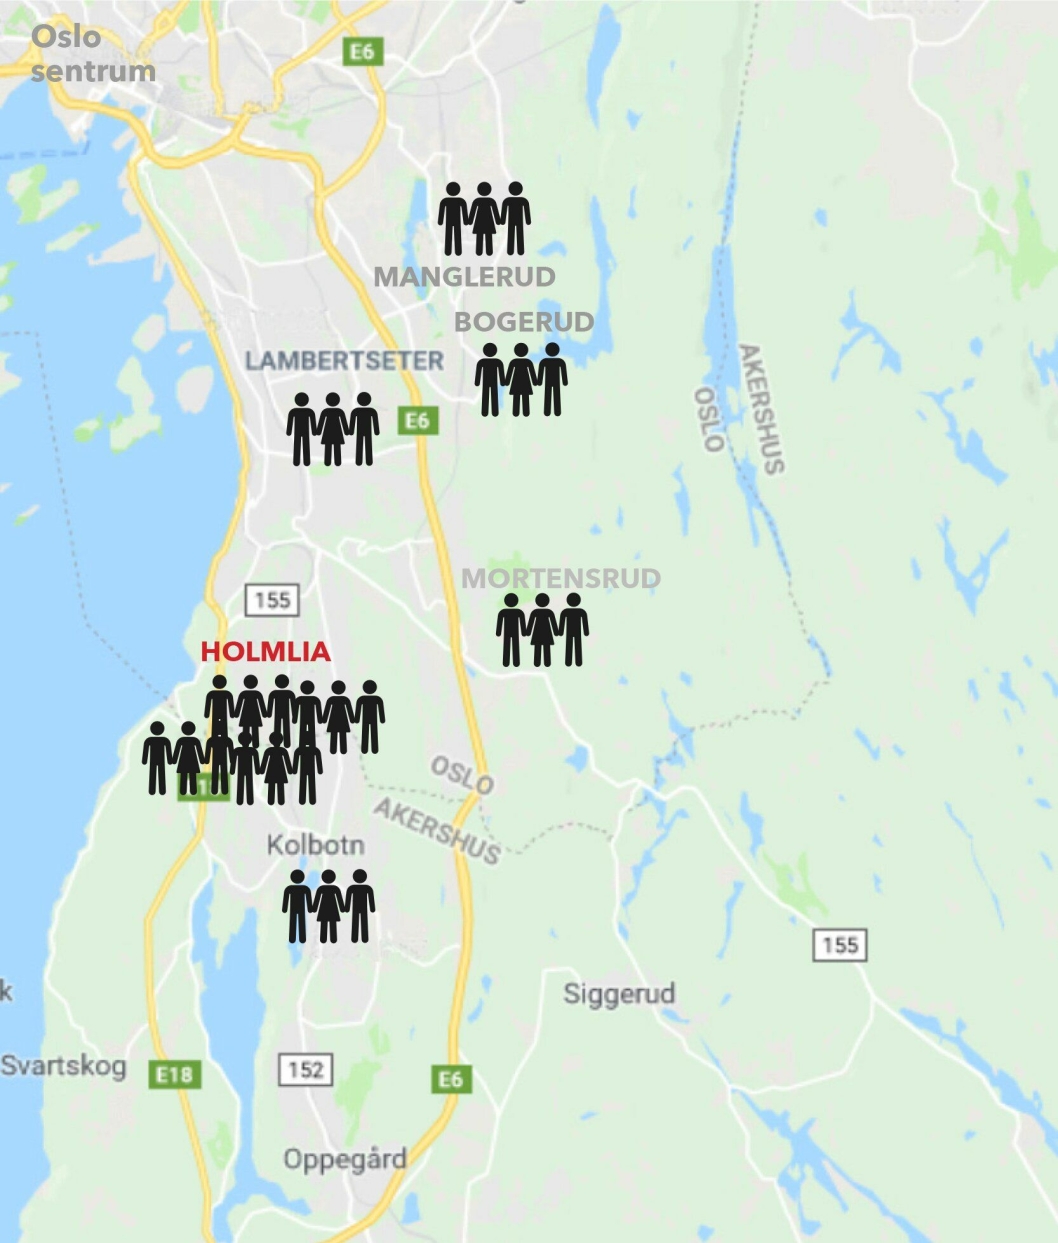 SPRER SEG TIL OPPEGÅRD: Politiet mener den kriminelle gjengen Young Bloods utøver innflytelse og rekrutterer løpegutter fra flere områder av Oslo og Oppegård.